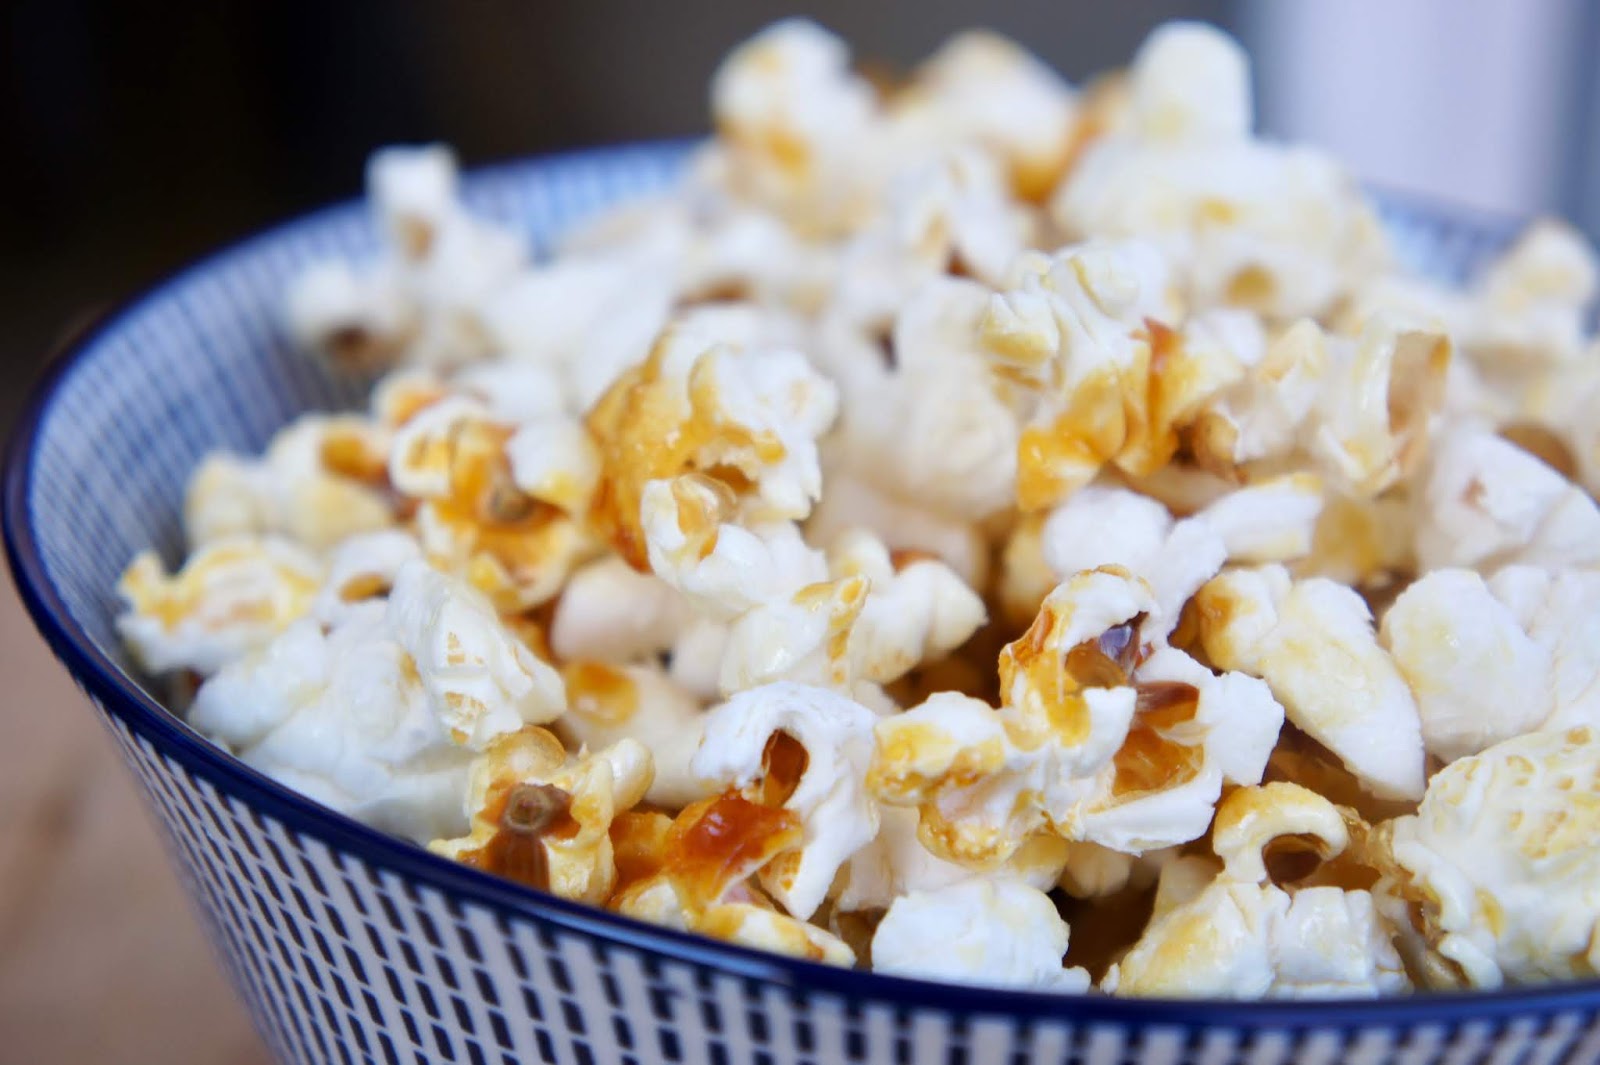 Rezept für selbstgemachtes Popcorn wie im Kino ohne Maschine/Mikrowelle ...